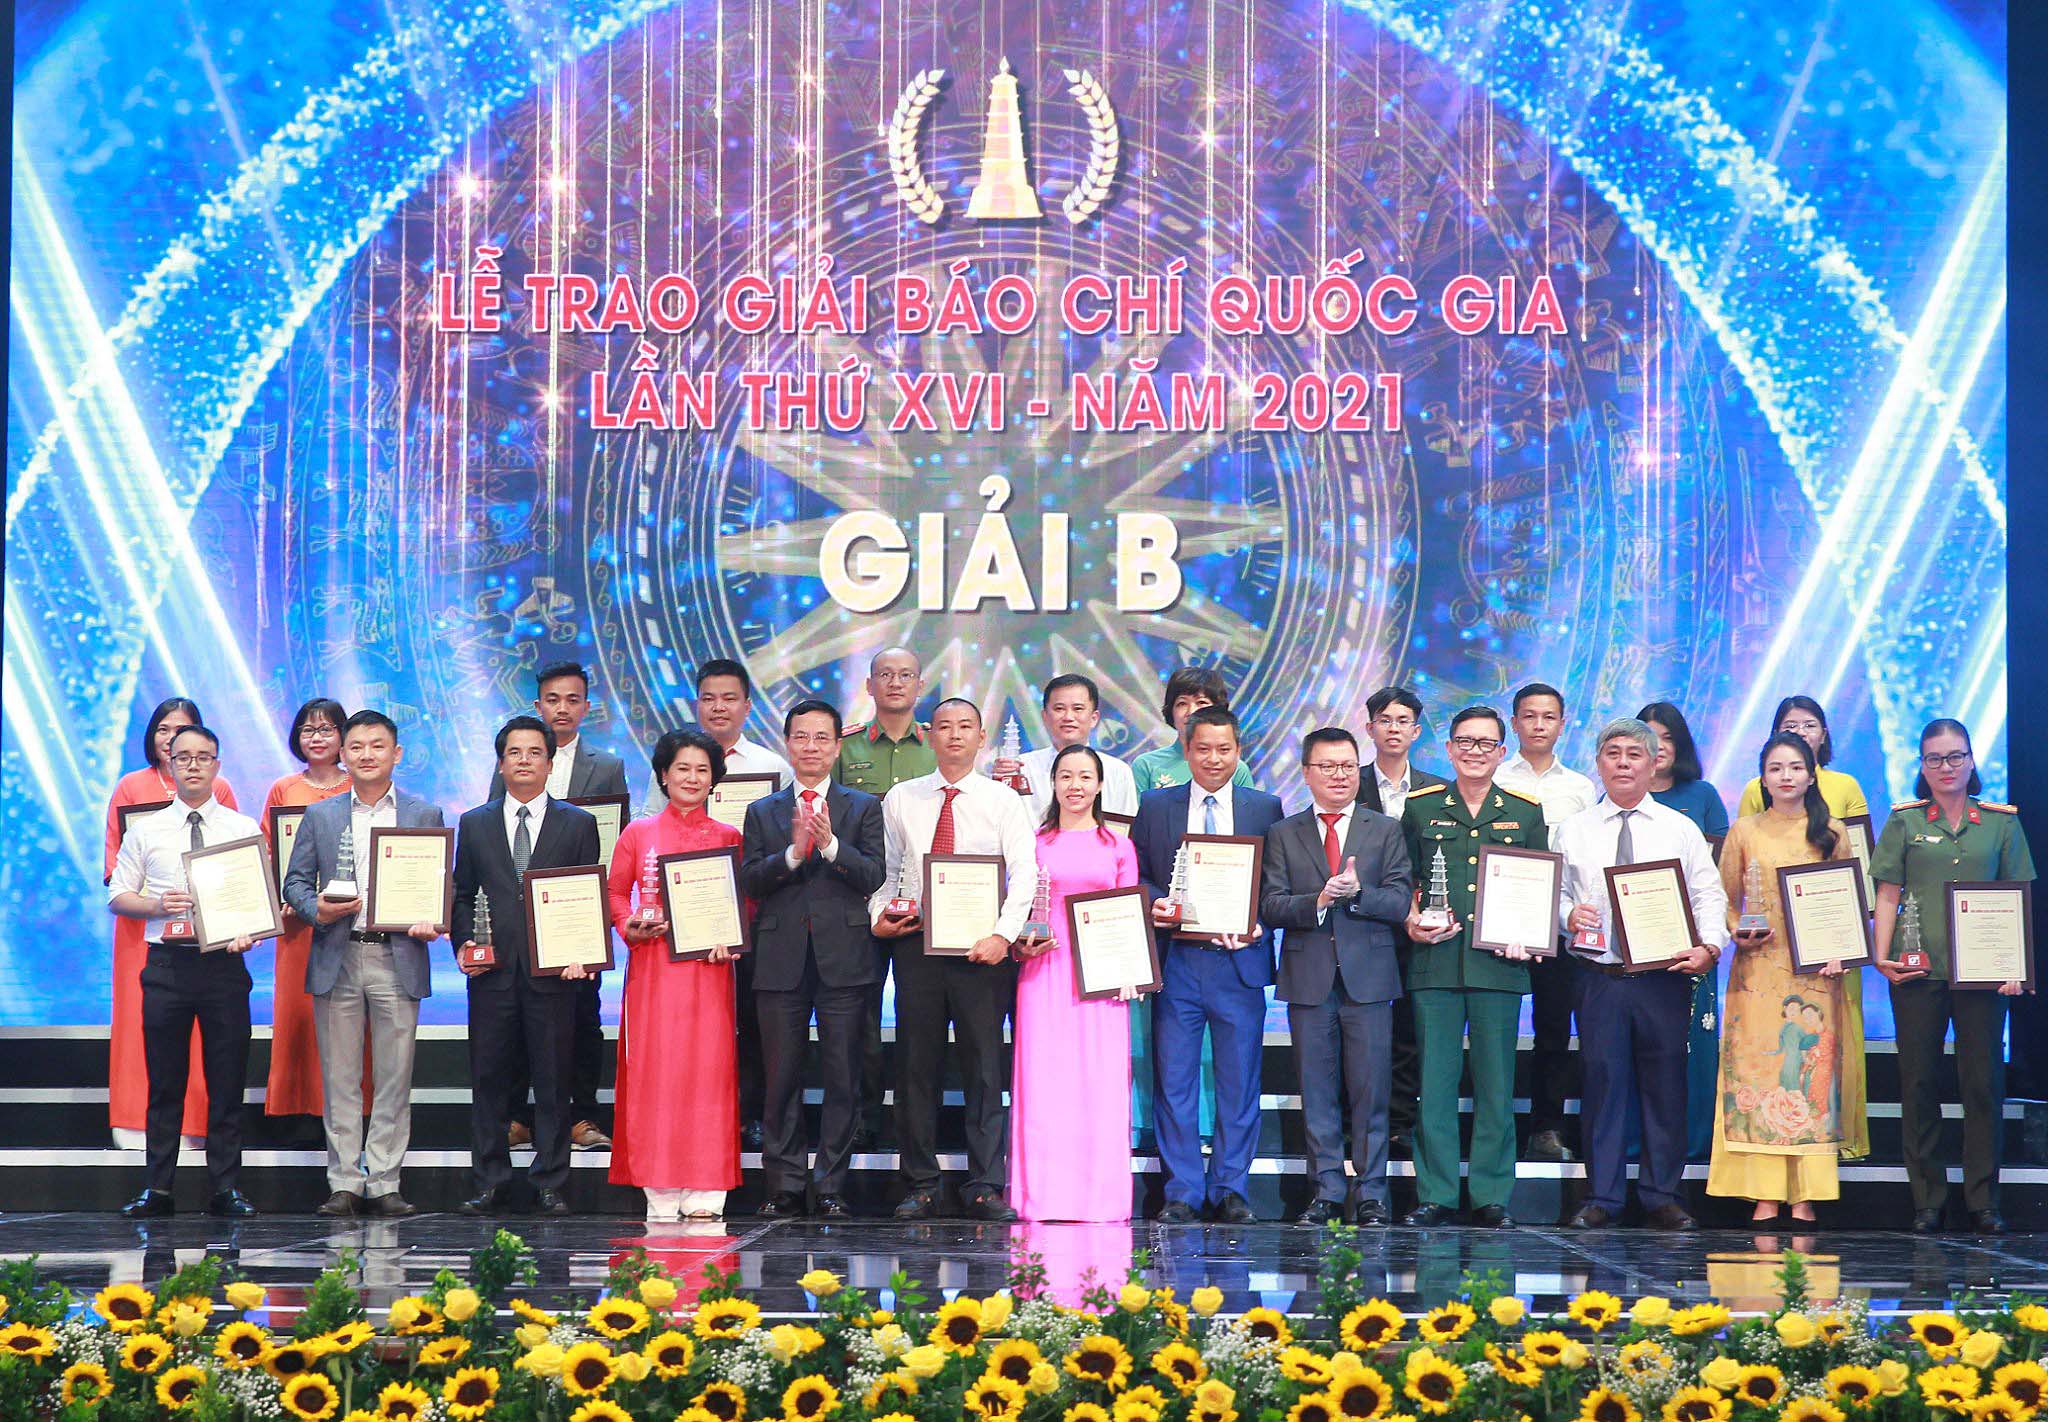 Nhà báo Phạm Anh Minh (Báo Đầu tư) nhận Giải B giải Báo chí Quốc gia năm 2021